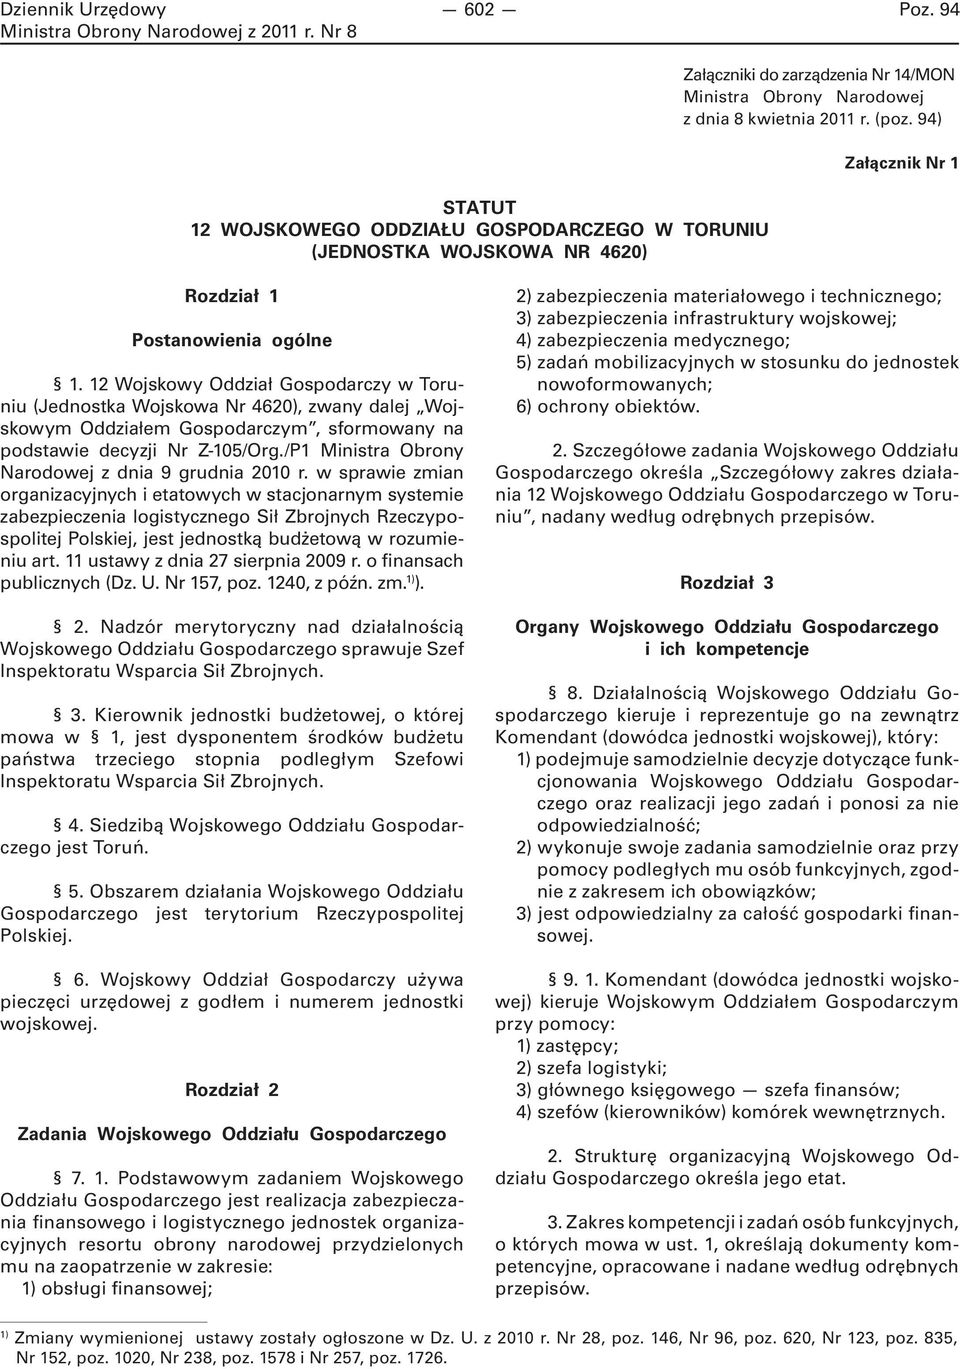 12 Wojskowy Oddział Gospodarczy w Toruniu (Jednostka Wojskowa Nr 4620), zwany dalej Wojskowym Oddziałem Gospodarczym, sformowany na podstawie decyzji Nr Z-105/Org.